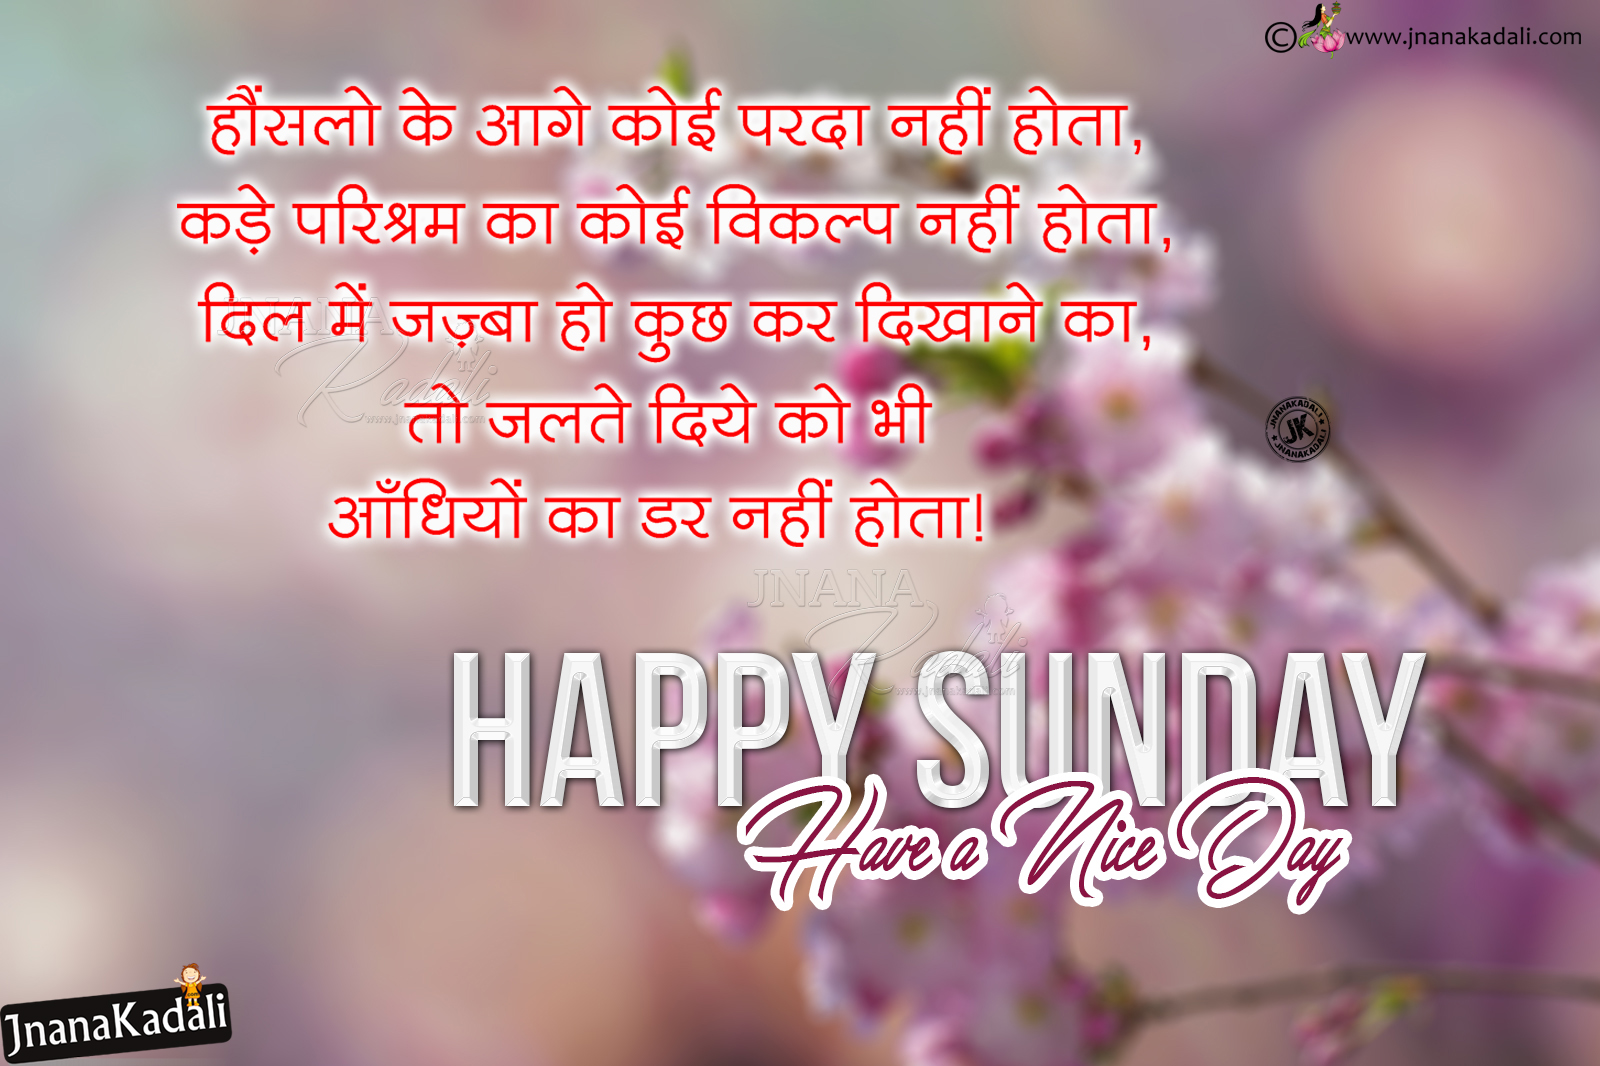 Happy Sunday Good Morning Quotes hd wallpapers in Hindi | JNANA ...